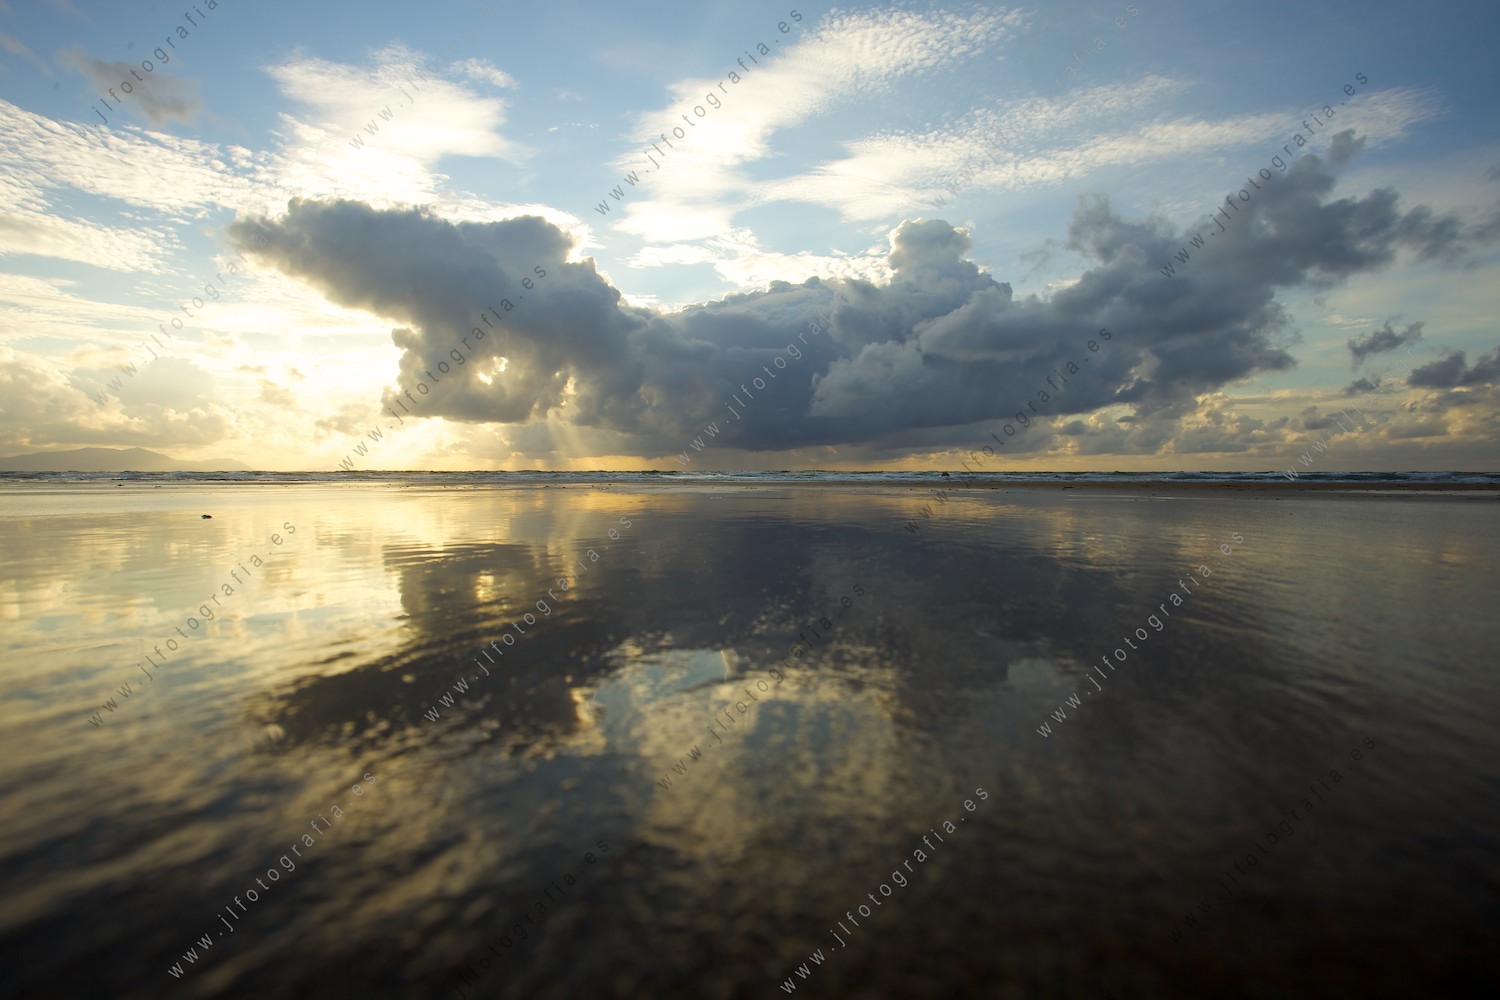 Reflejo del cielo en la oriya de la playa en marea baja.